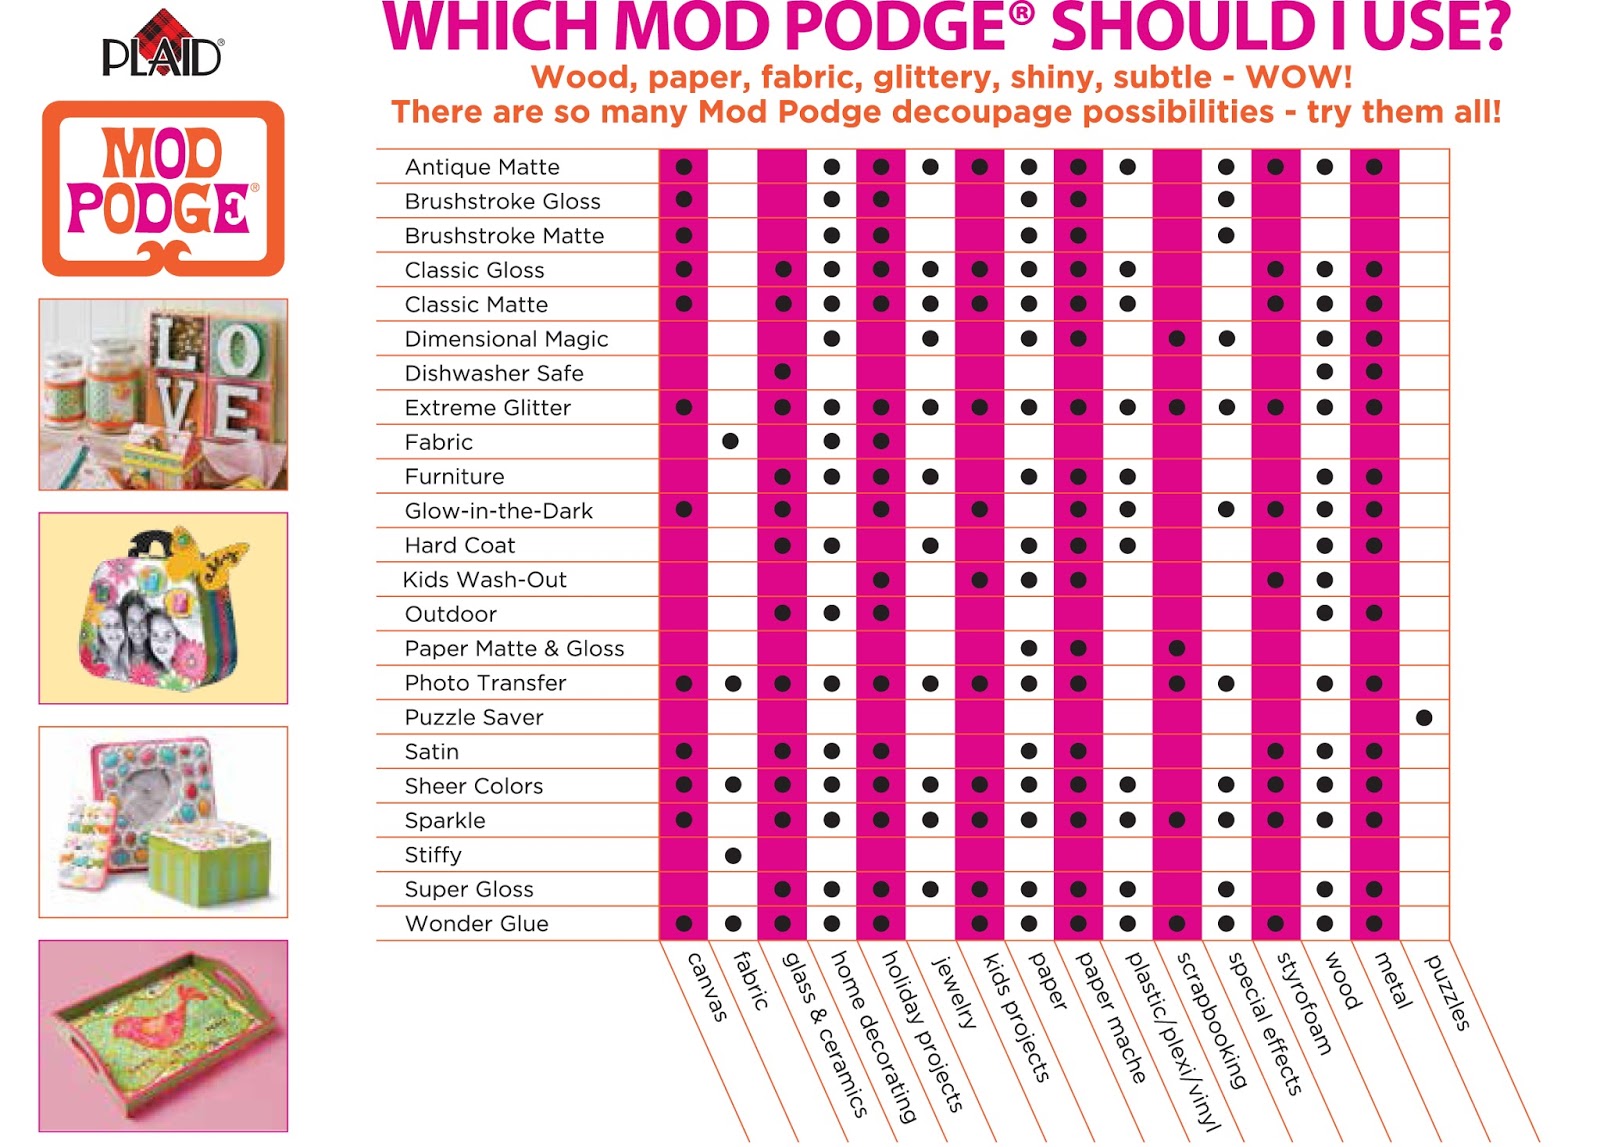 Sparkle Mod Podge: Your Ultimate Guide! - Mod Podge Rocks